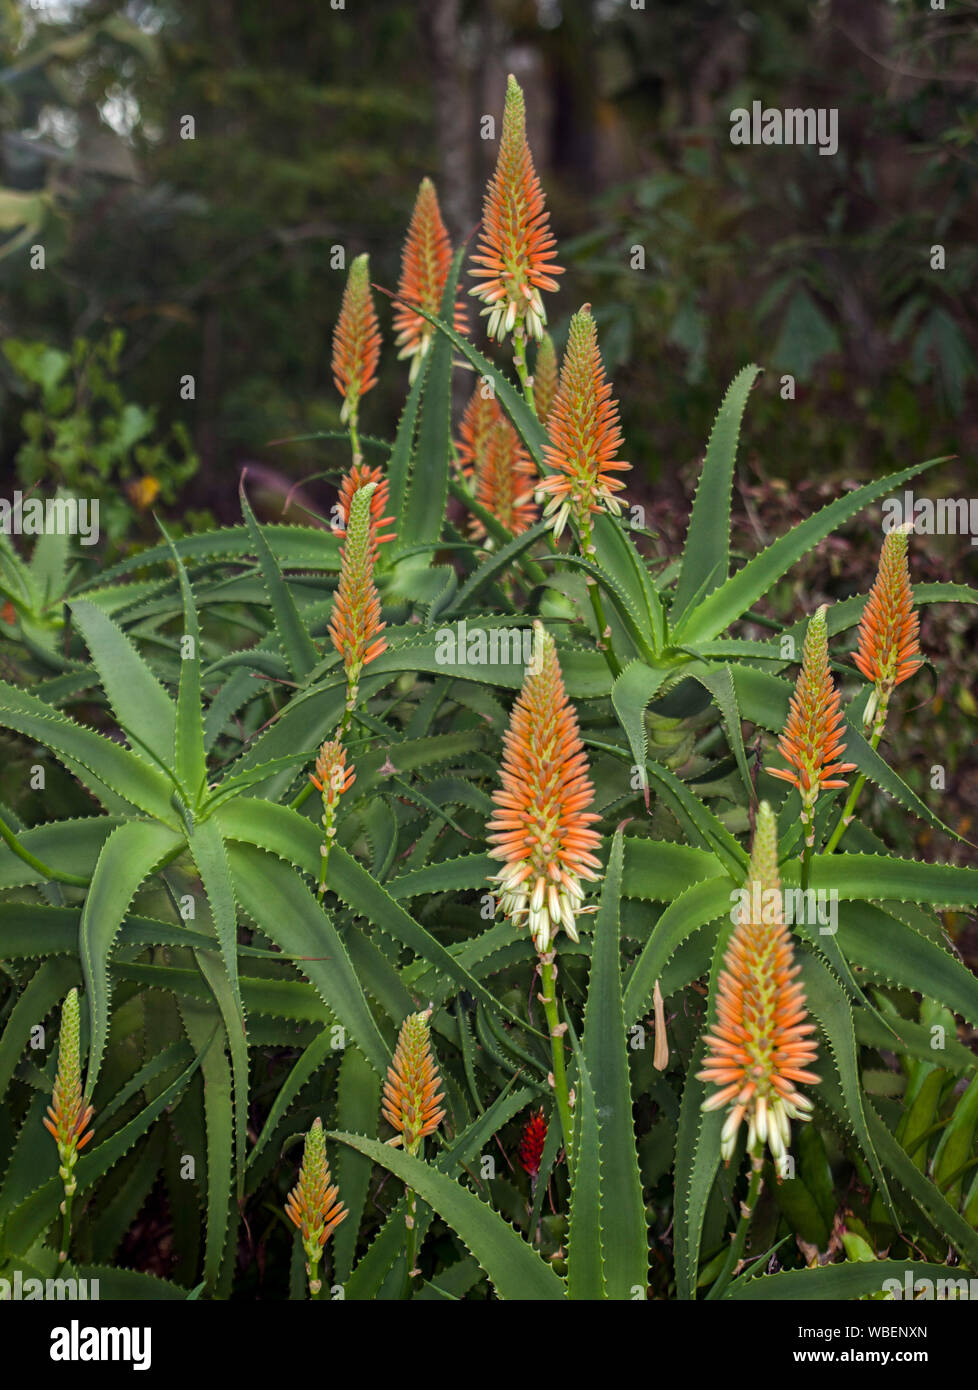 Plante succulente tolérant la sécheresse, l'Aloe 'Venus', avec des épis de fleurs crème orange et vert lumineux passant de feuilles épineuses Banque D'Images